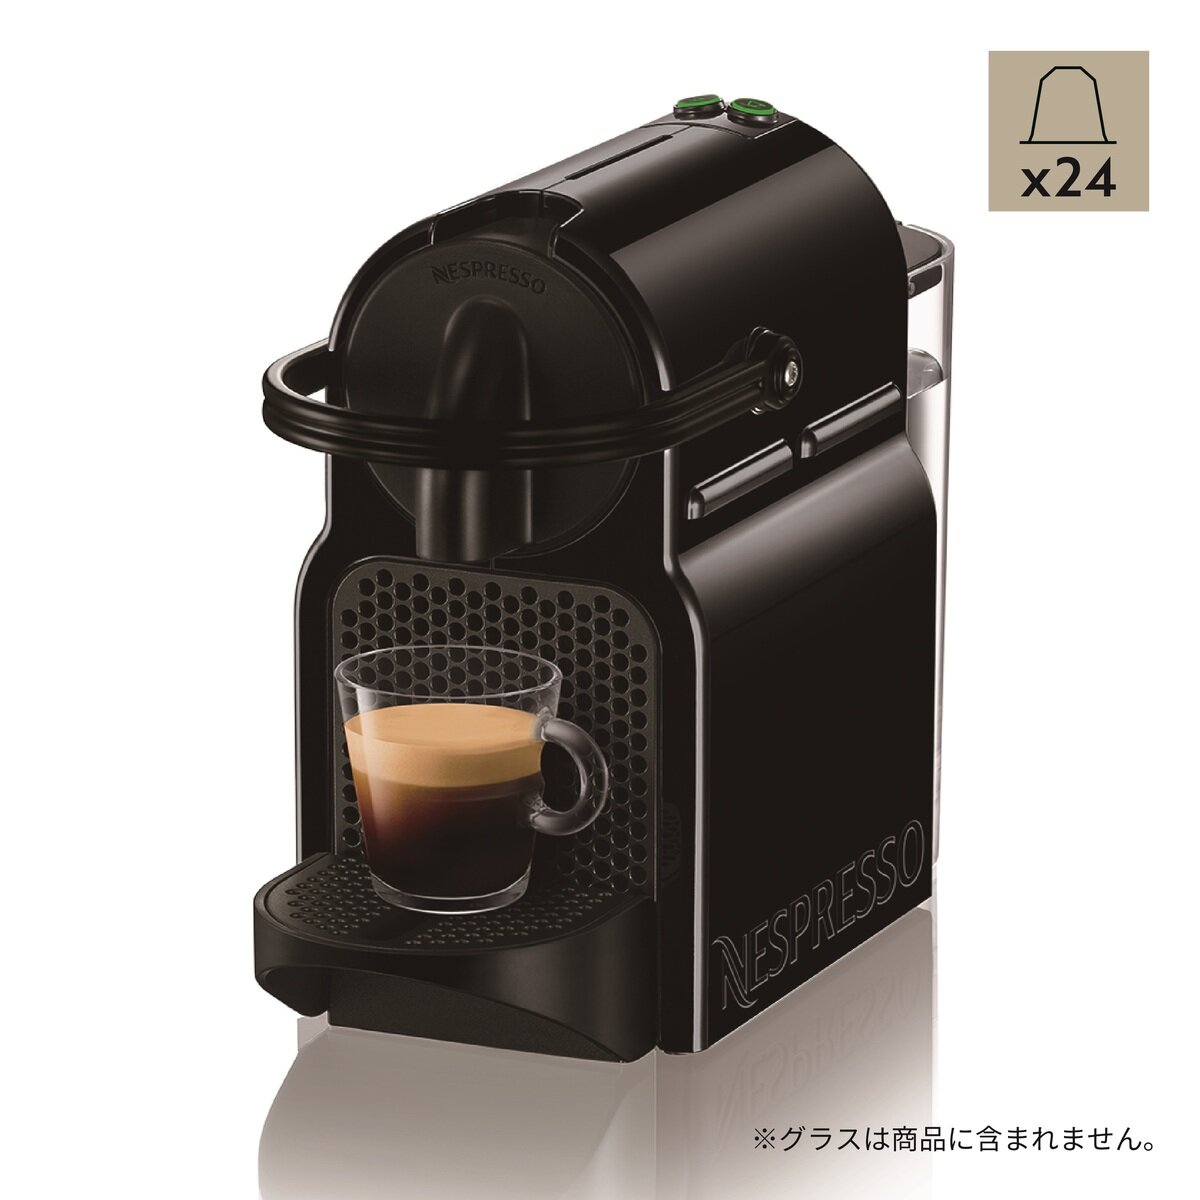 ネスプレッソ イニッシア ボーナスパック ブラック カプセルコーヒー24杯分付き D40-BK-W